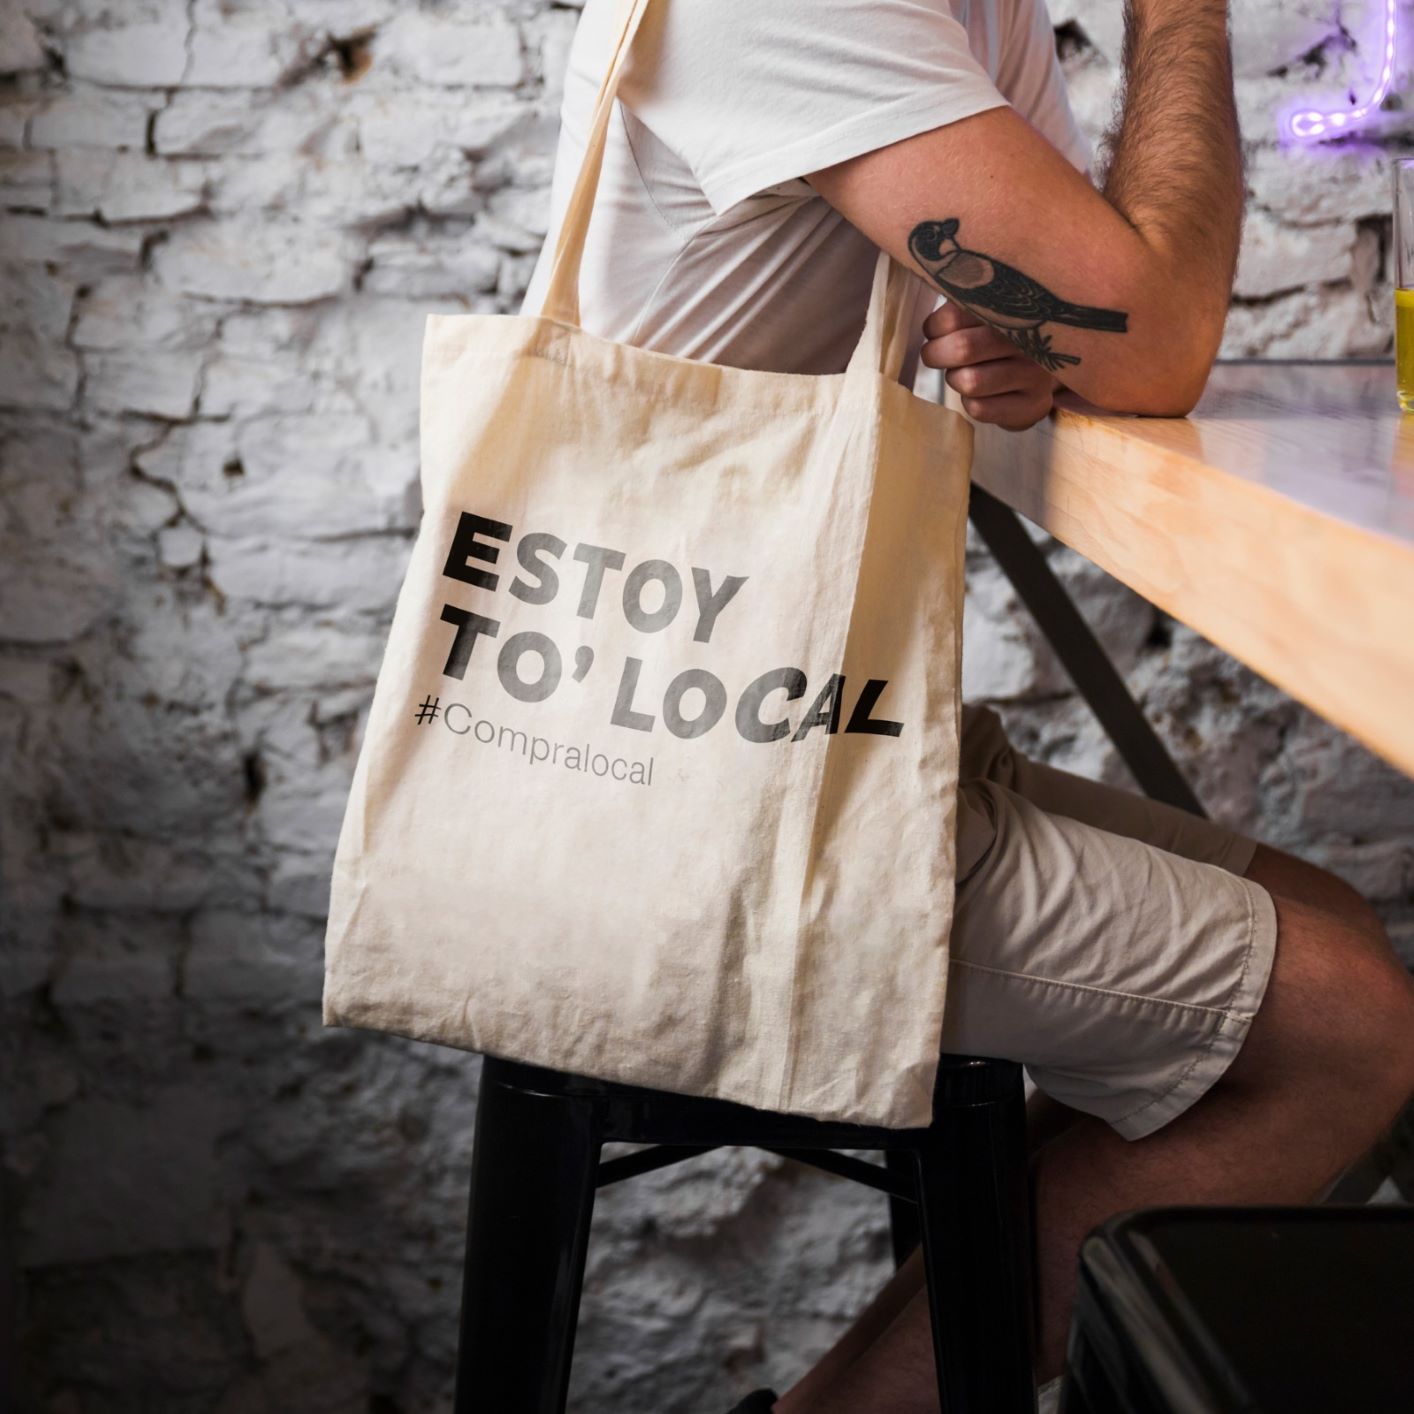 Las bolsas de #EstoyToLocal